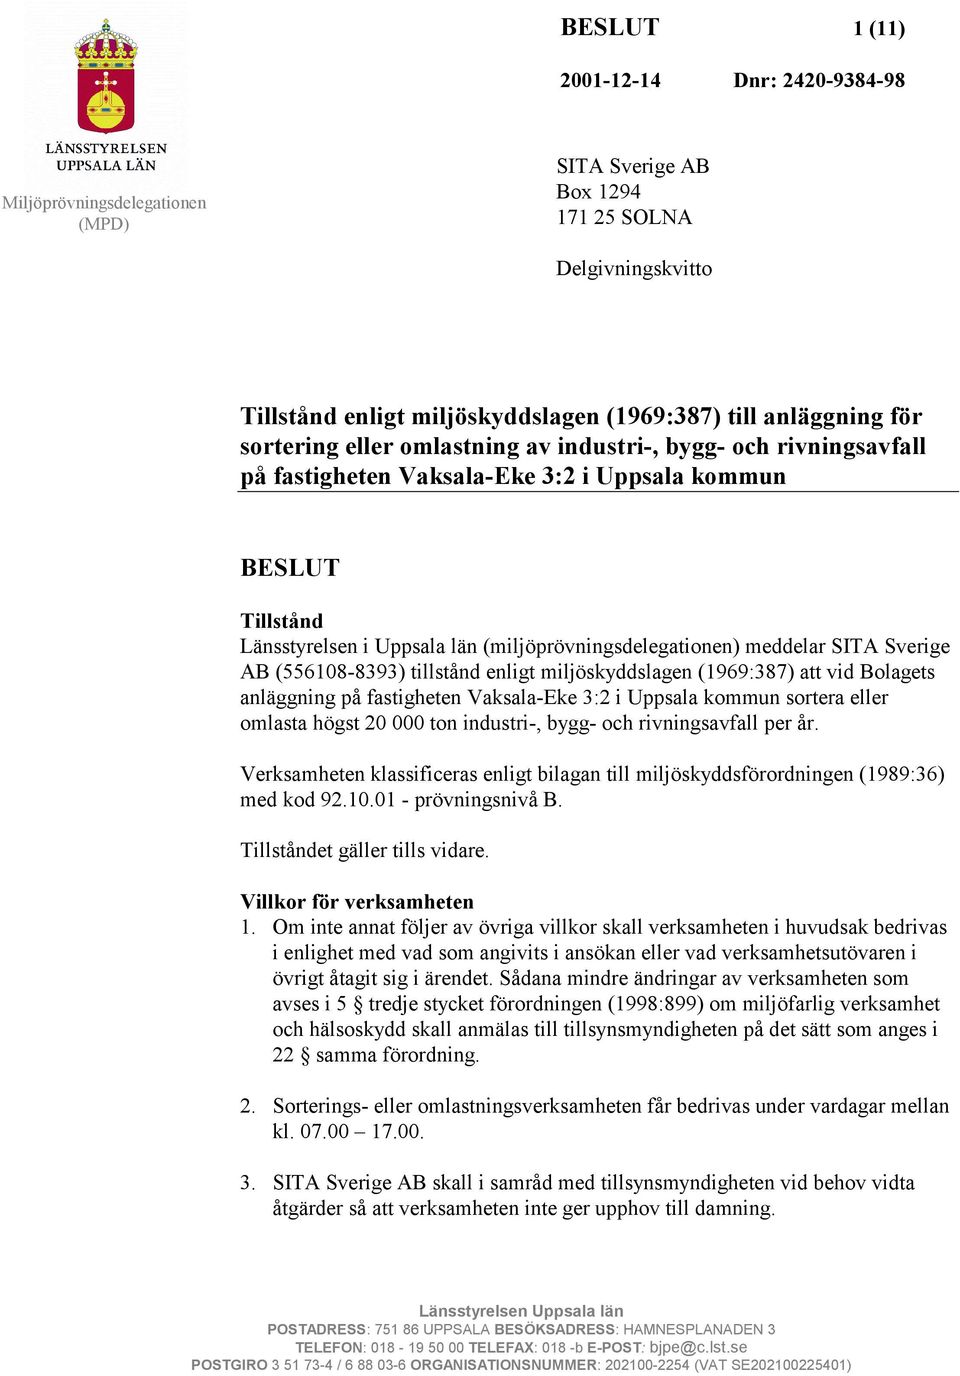 tillstånd enligt miljöskyddslagen (1969:387) att vid Bolagets anläggning på fastigheten Vaksala-Eke 3:2 i Uppsala kommun sortera eller omlasta högst 20 000 ton industri-, bygg- och rivningsavfall per